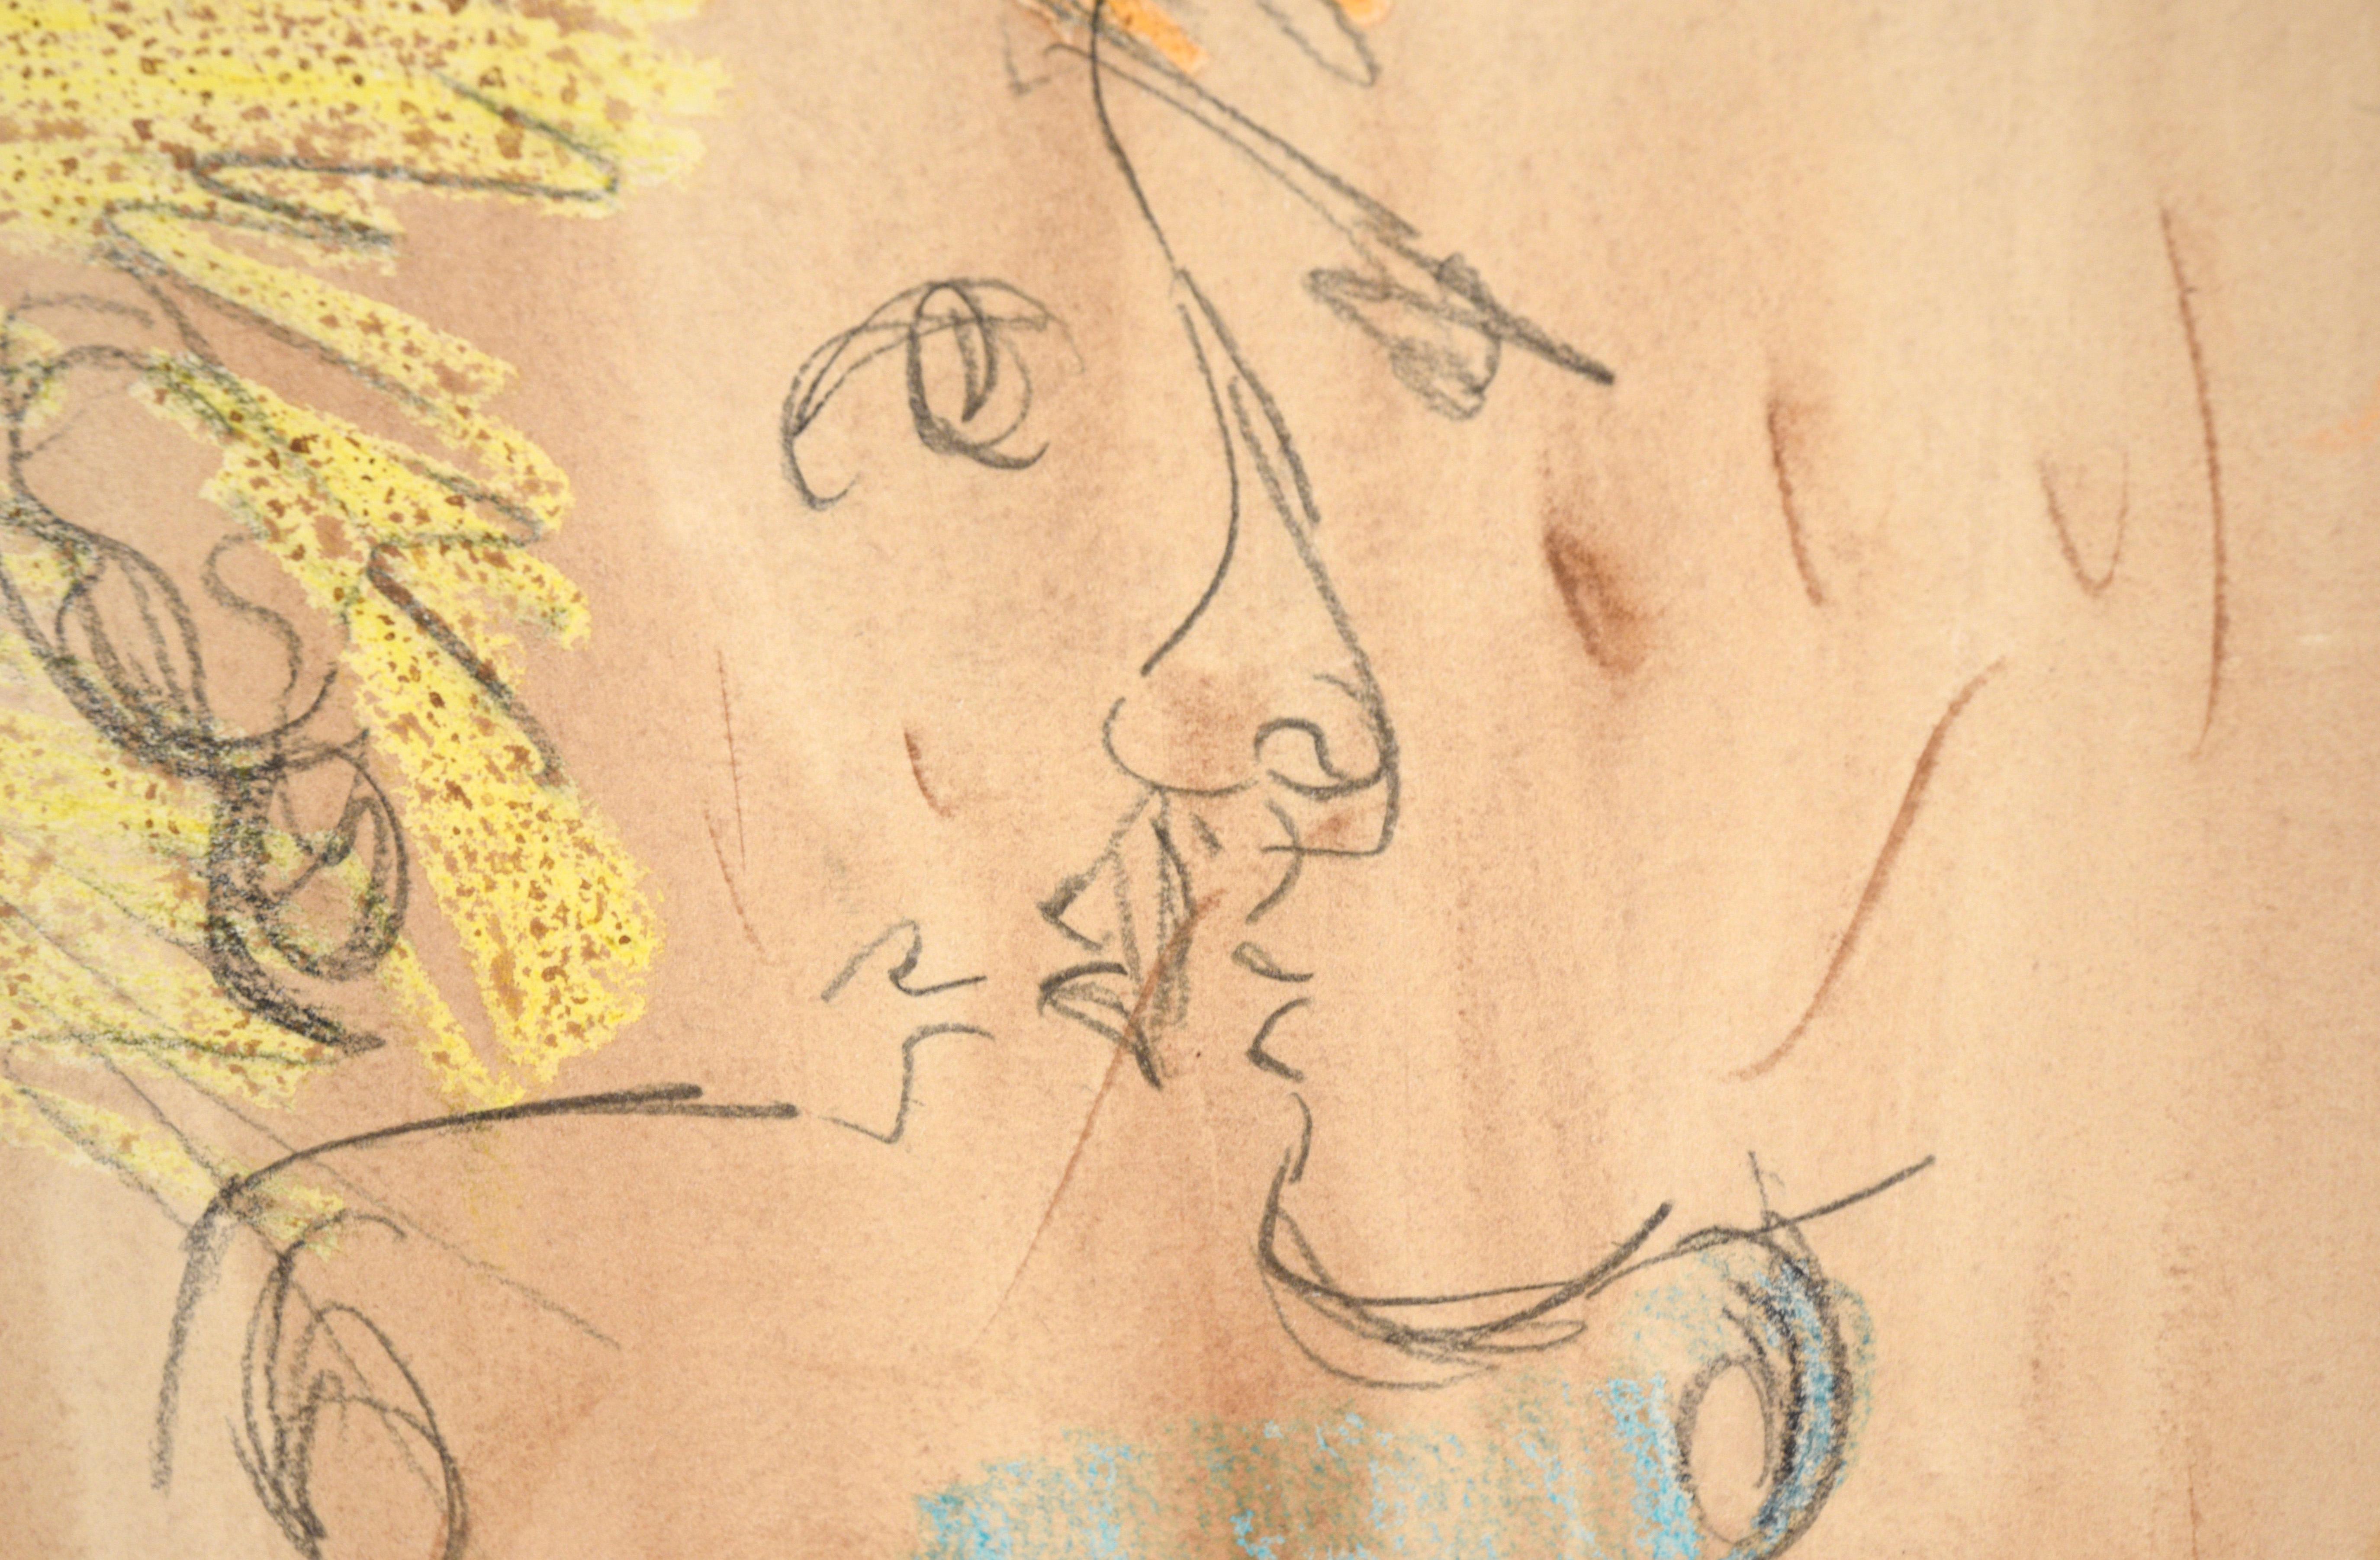 Aquarelle abstraite « The Eyes Have It » (Les yeux l'ont ») et crayon sur papier - Impressionnisme abstrait Art par Ricardo de Silva